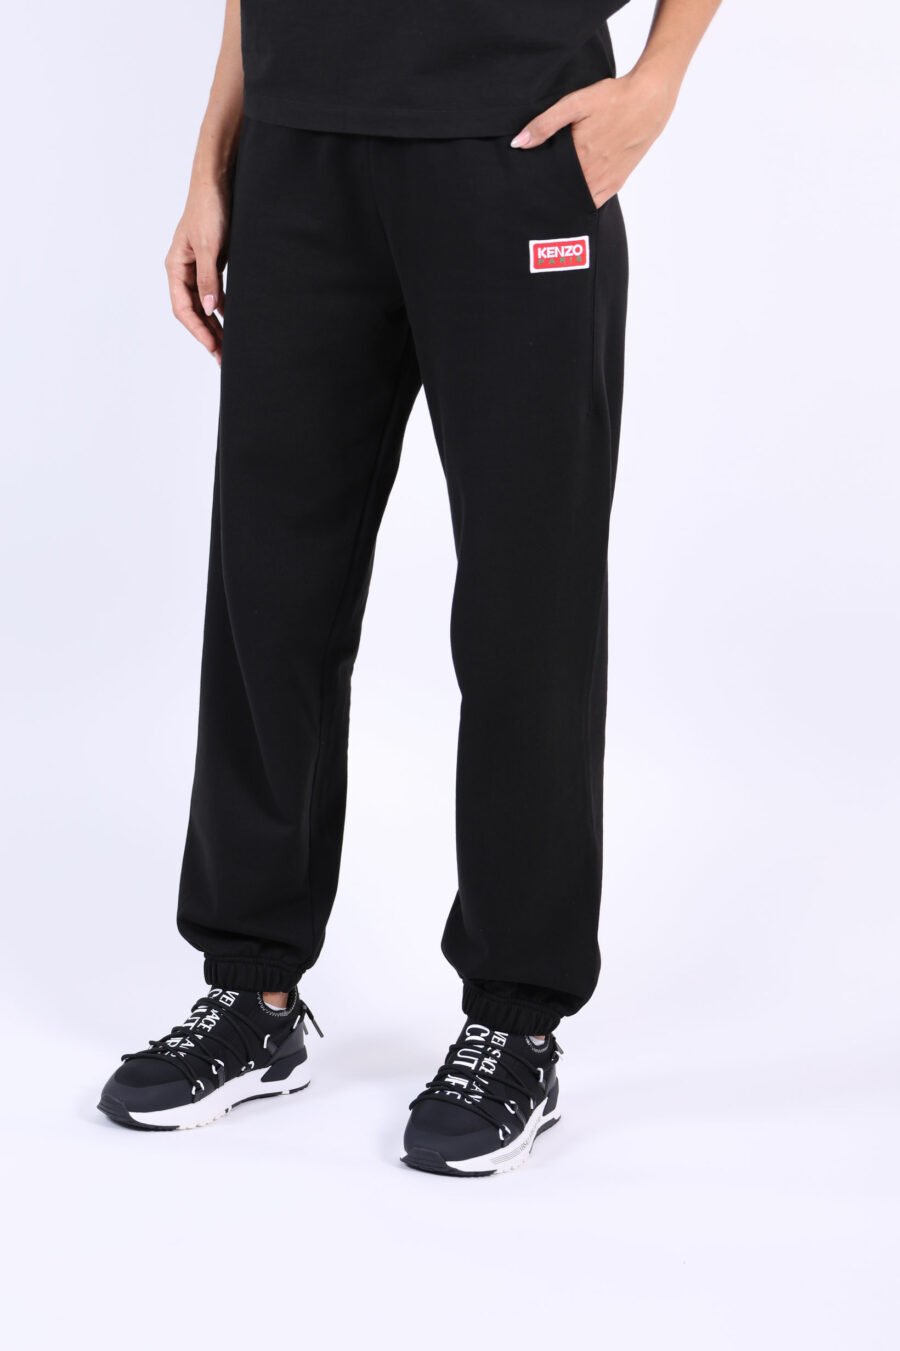 Pantalón de chándal negro con minilogo "kenzo paris" - 3612230514959 1